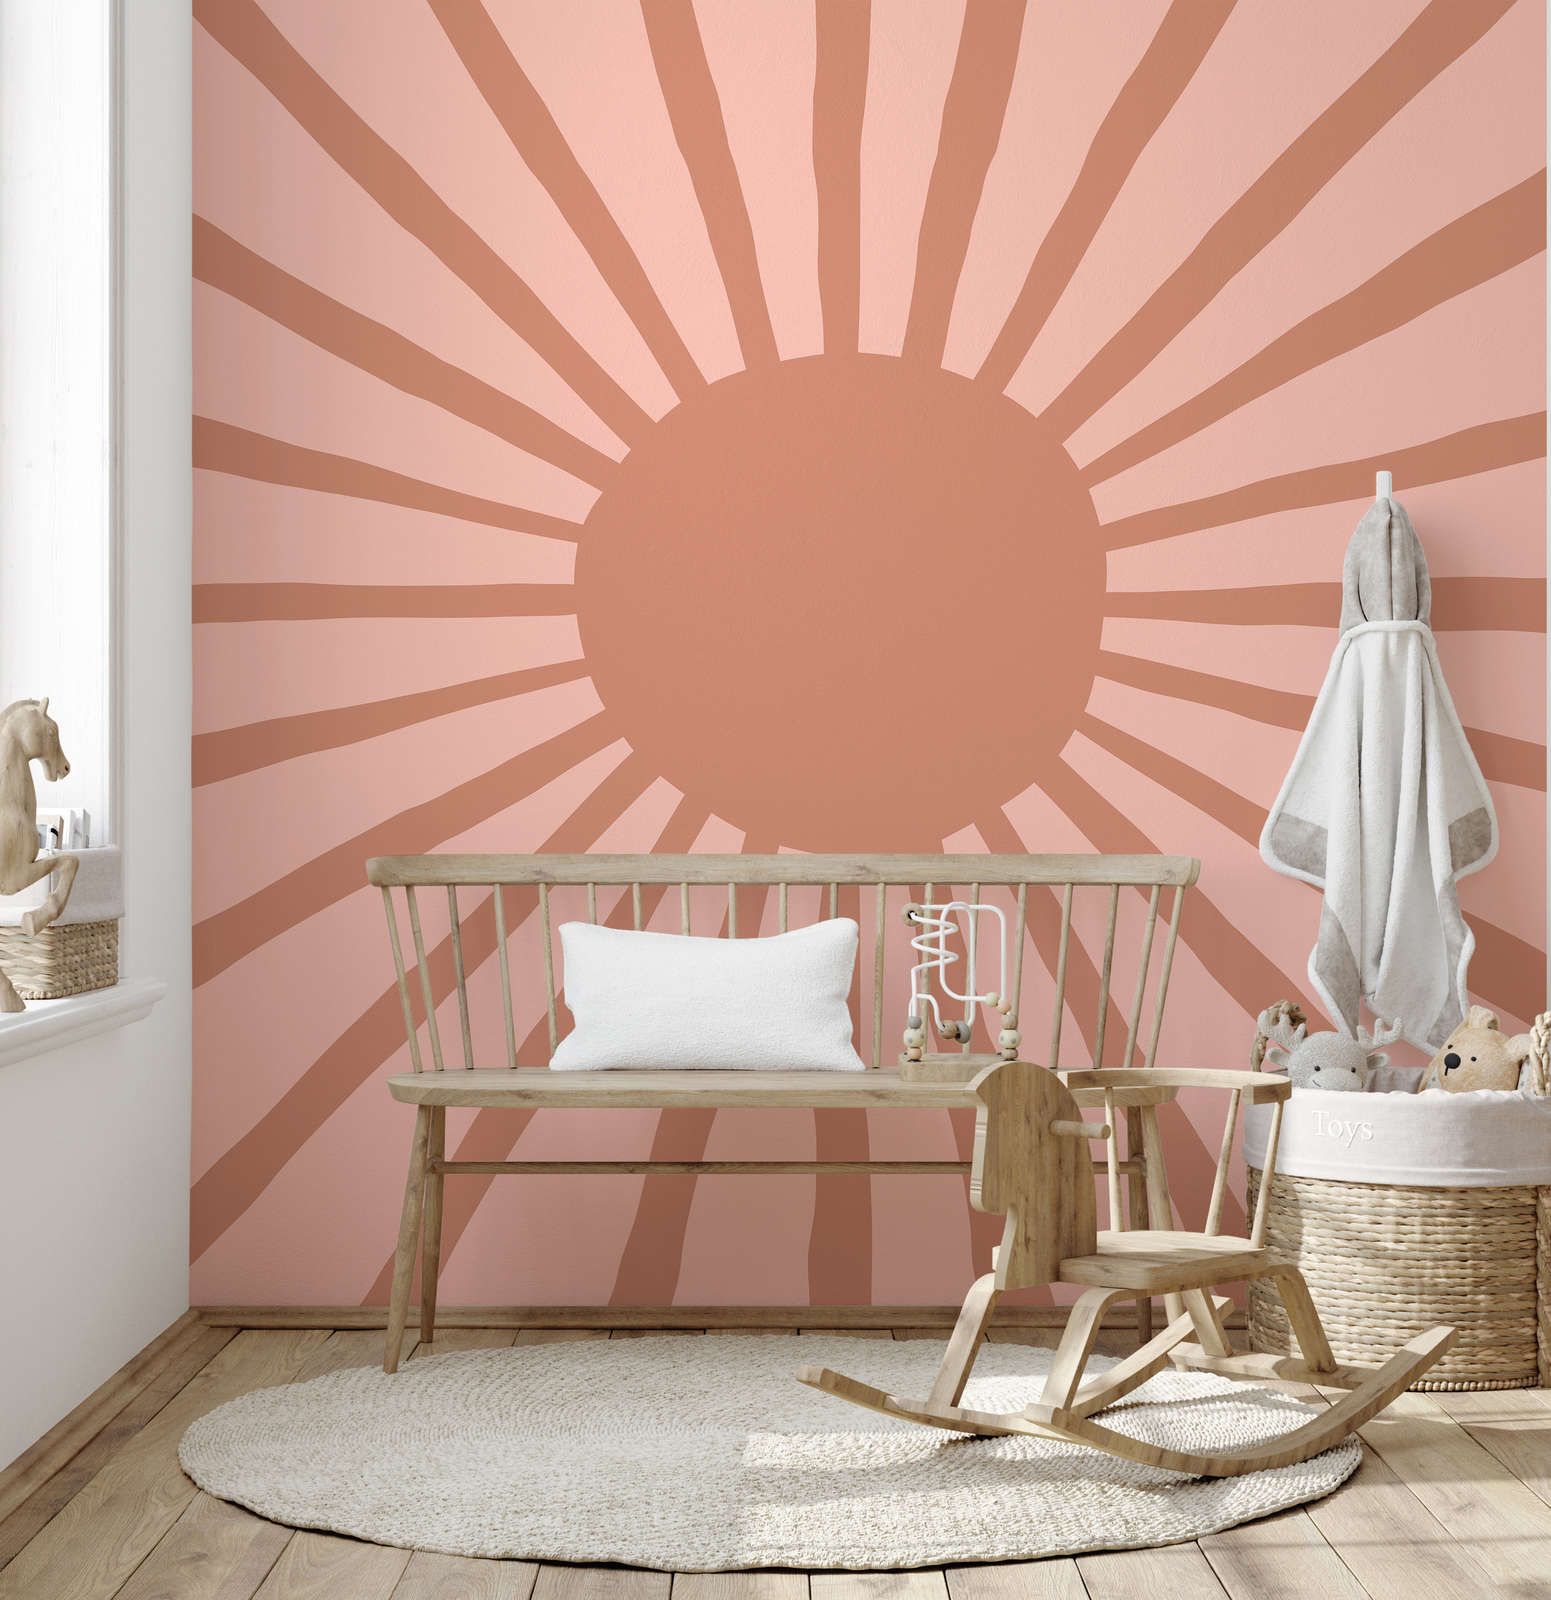         Fototapete abstrakte Sonne im gemalten Stil – Glattes & leicht glänzendes Vlies
    